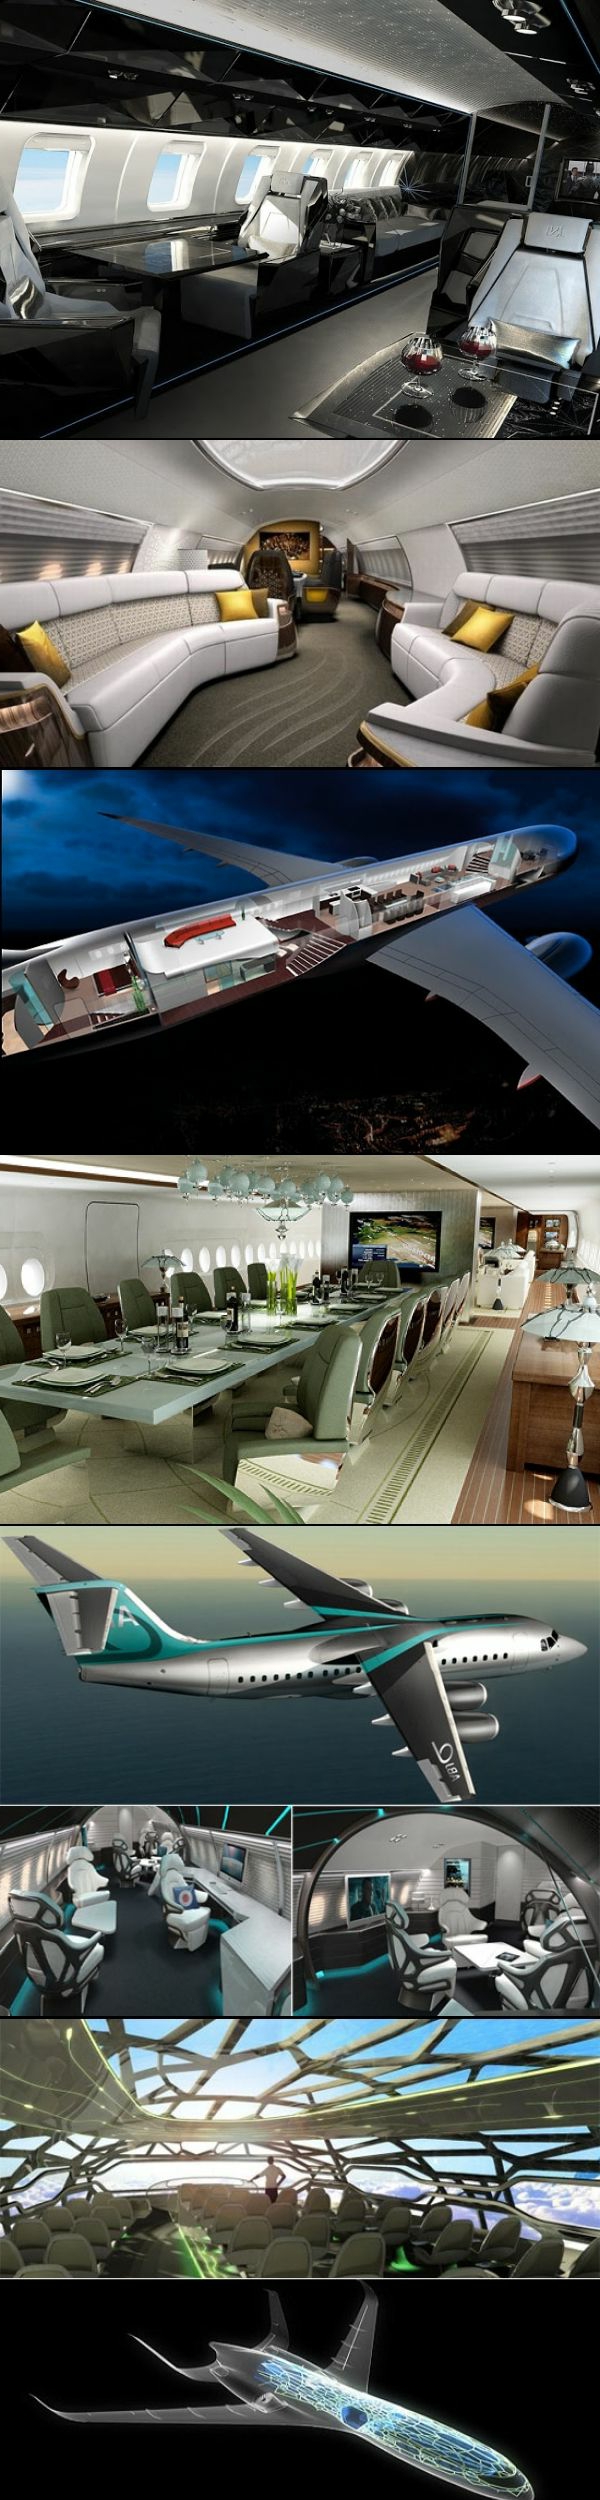 jet-privé-vol-intérieur-luxe-extraordinaire-noir-cuir